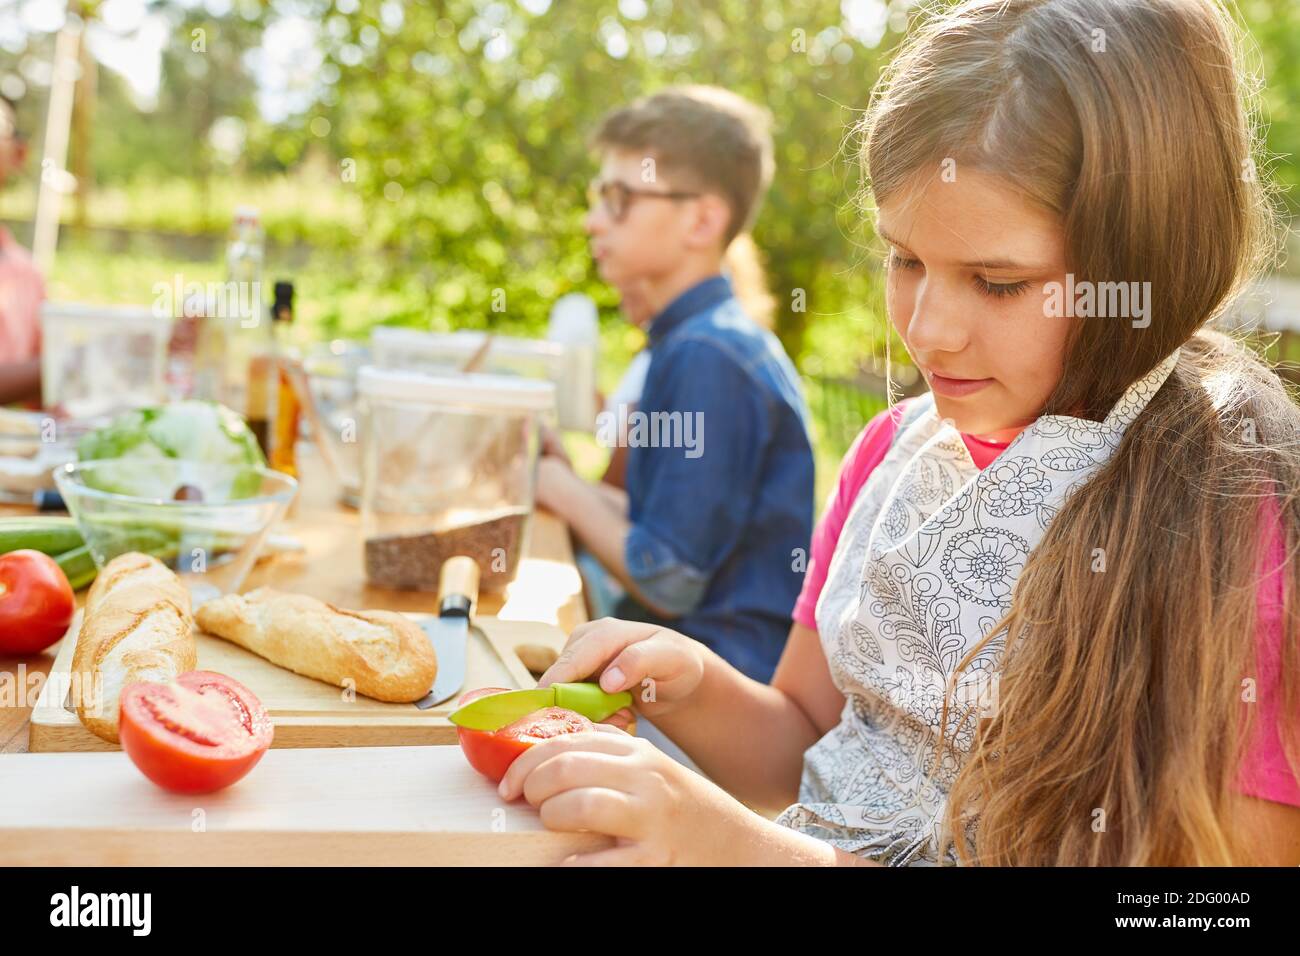 Fille dans camp d'été végétarien régime cuisine cours coupes a tomate Banque D'Images